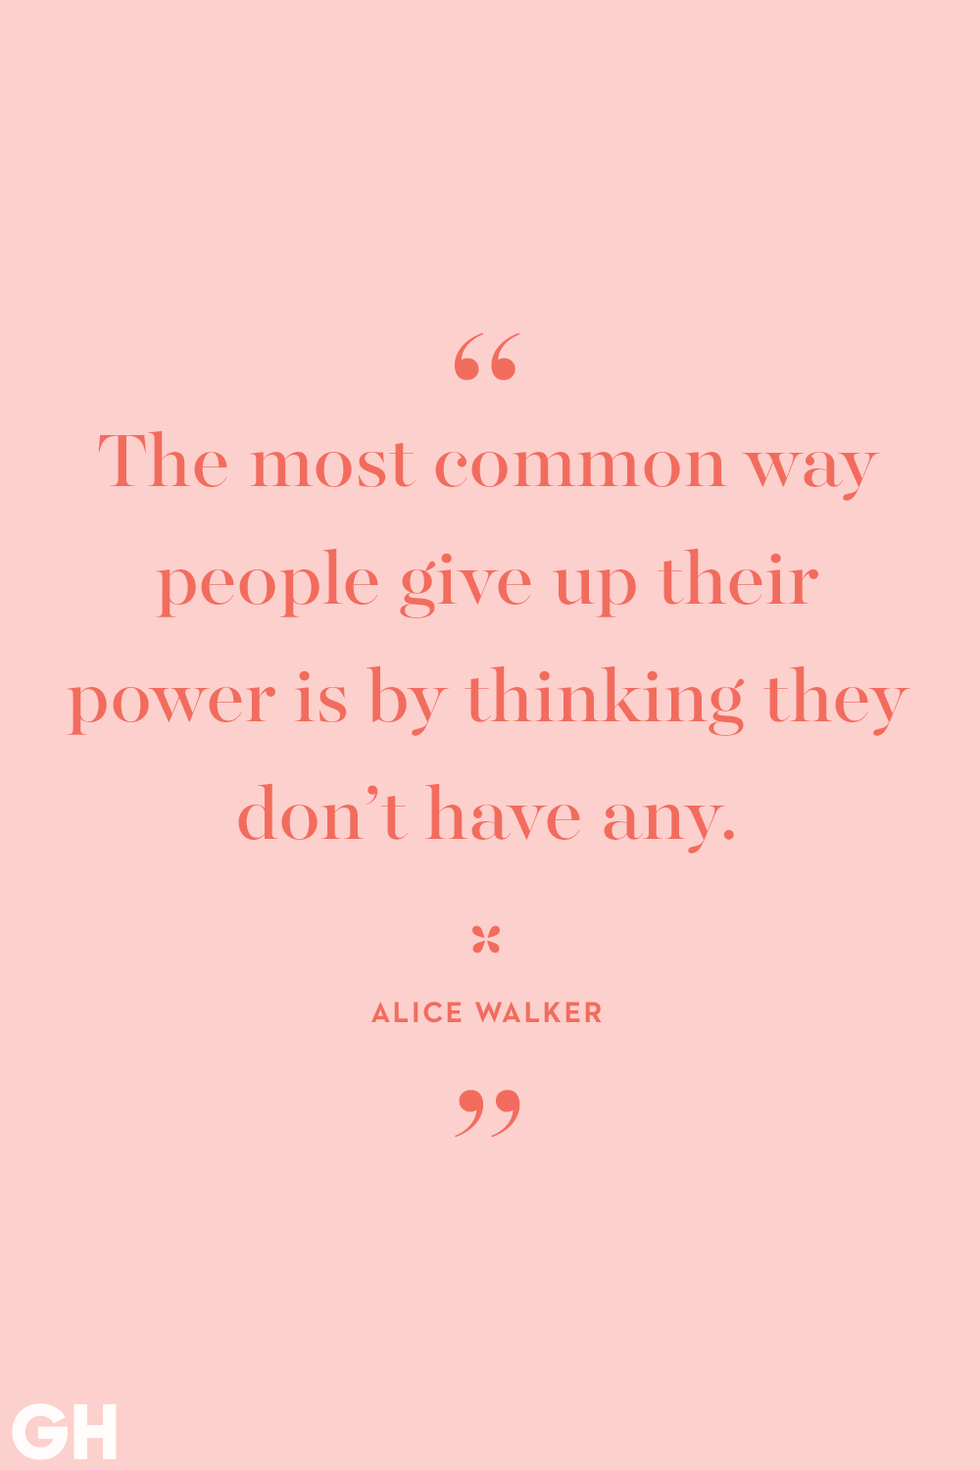 alice walker quote